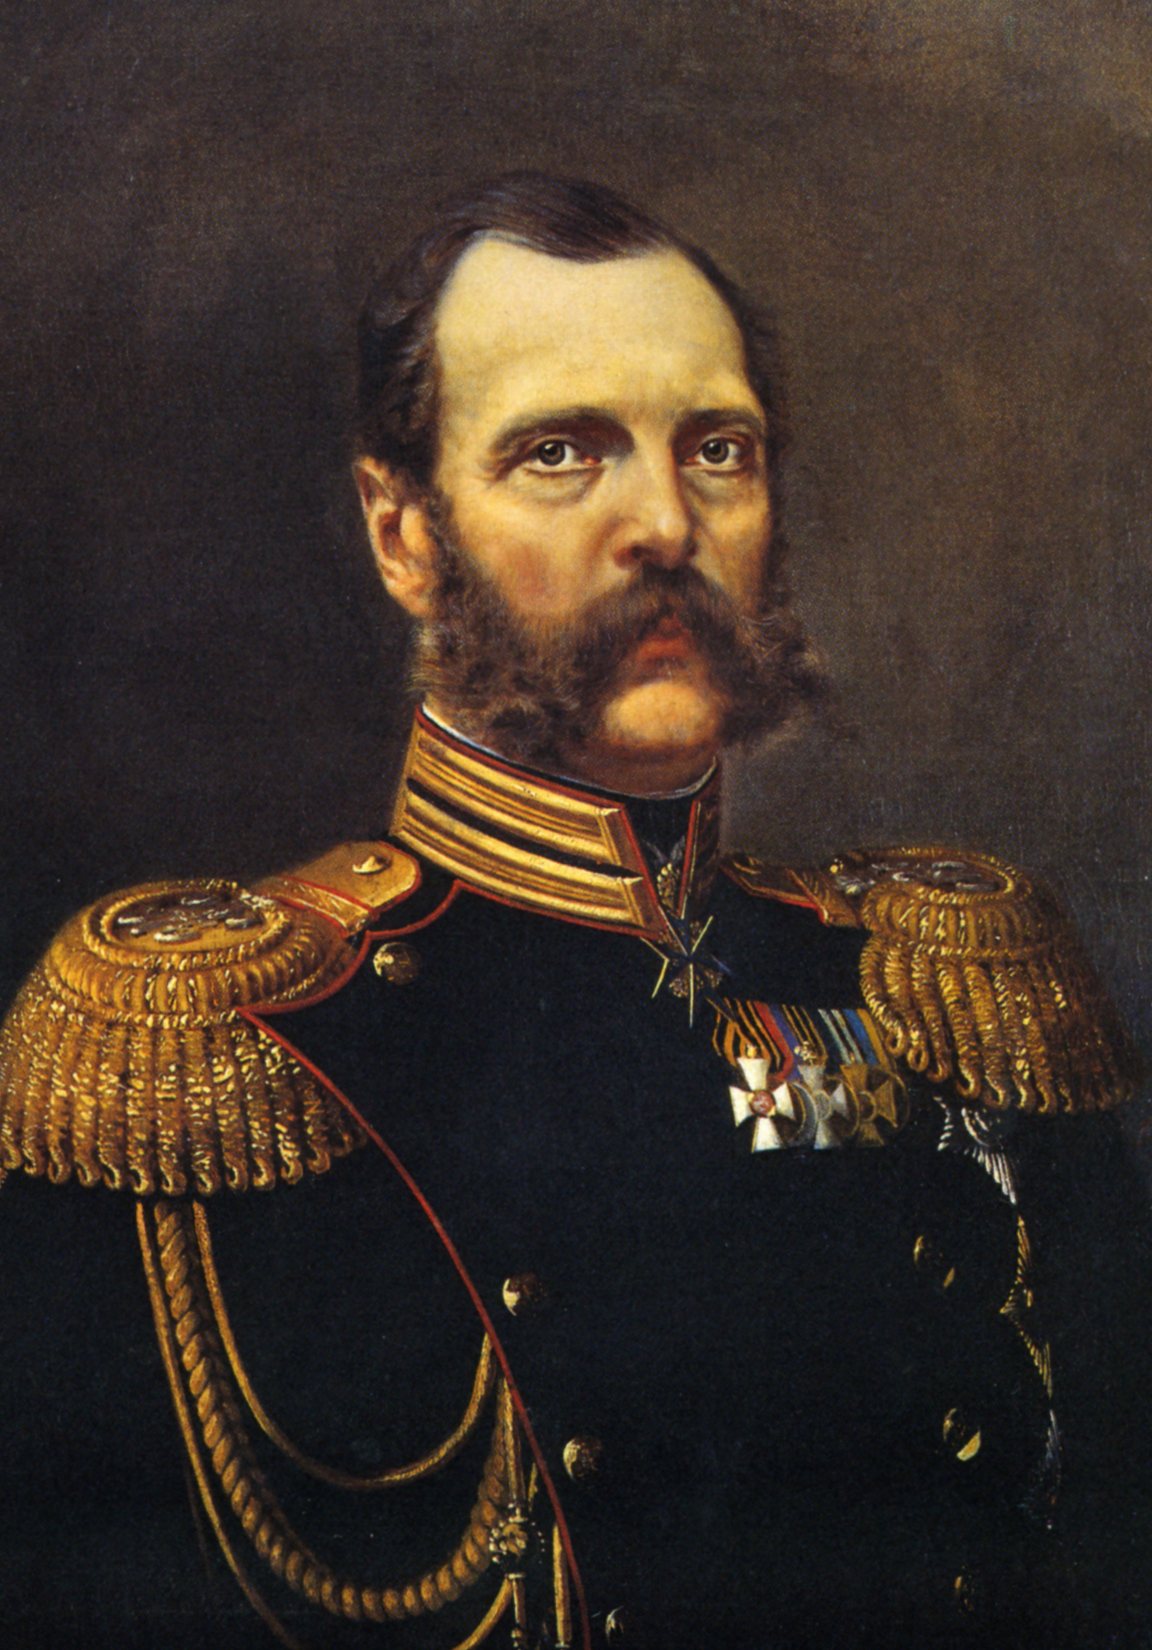 Император 20 века россии